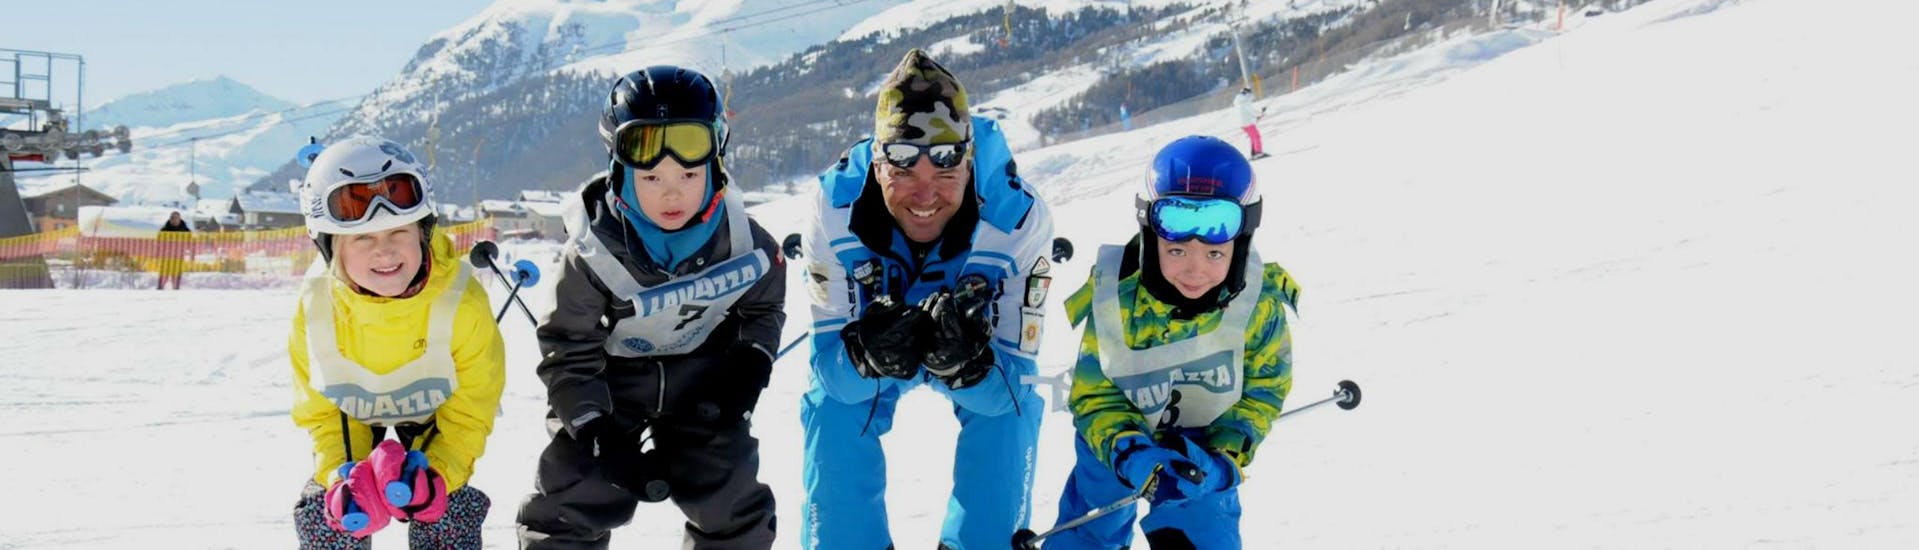 Trois enfants profitent de la demi-journée de cours de ski pour enfants (3-4 ans) - débutants avec leur moniteur de ski de l'école de ski Scuola di Sci e Snowboard Livigno Italie.